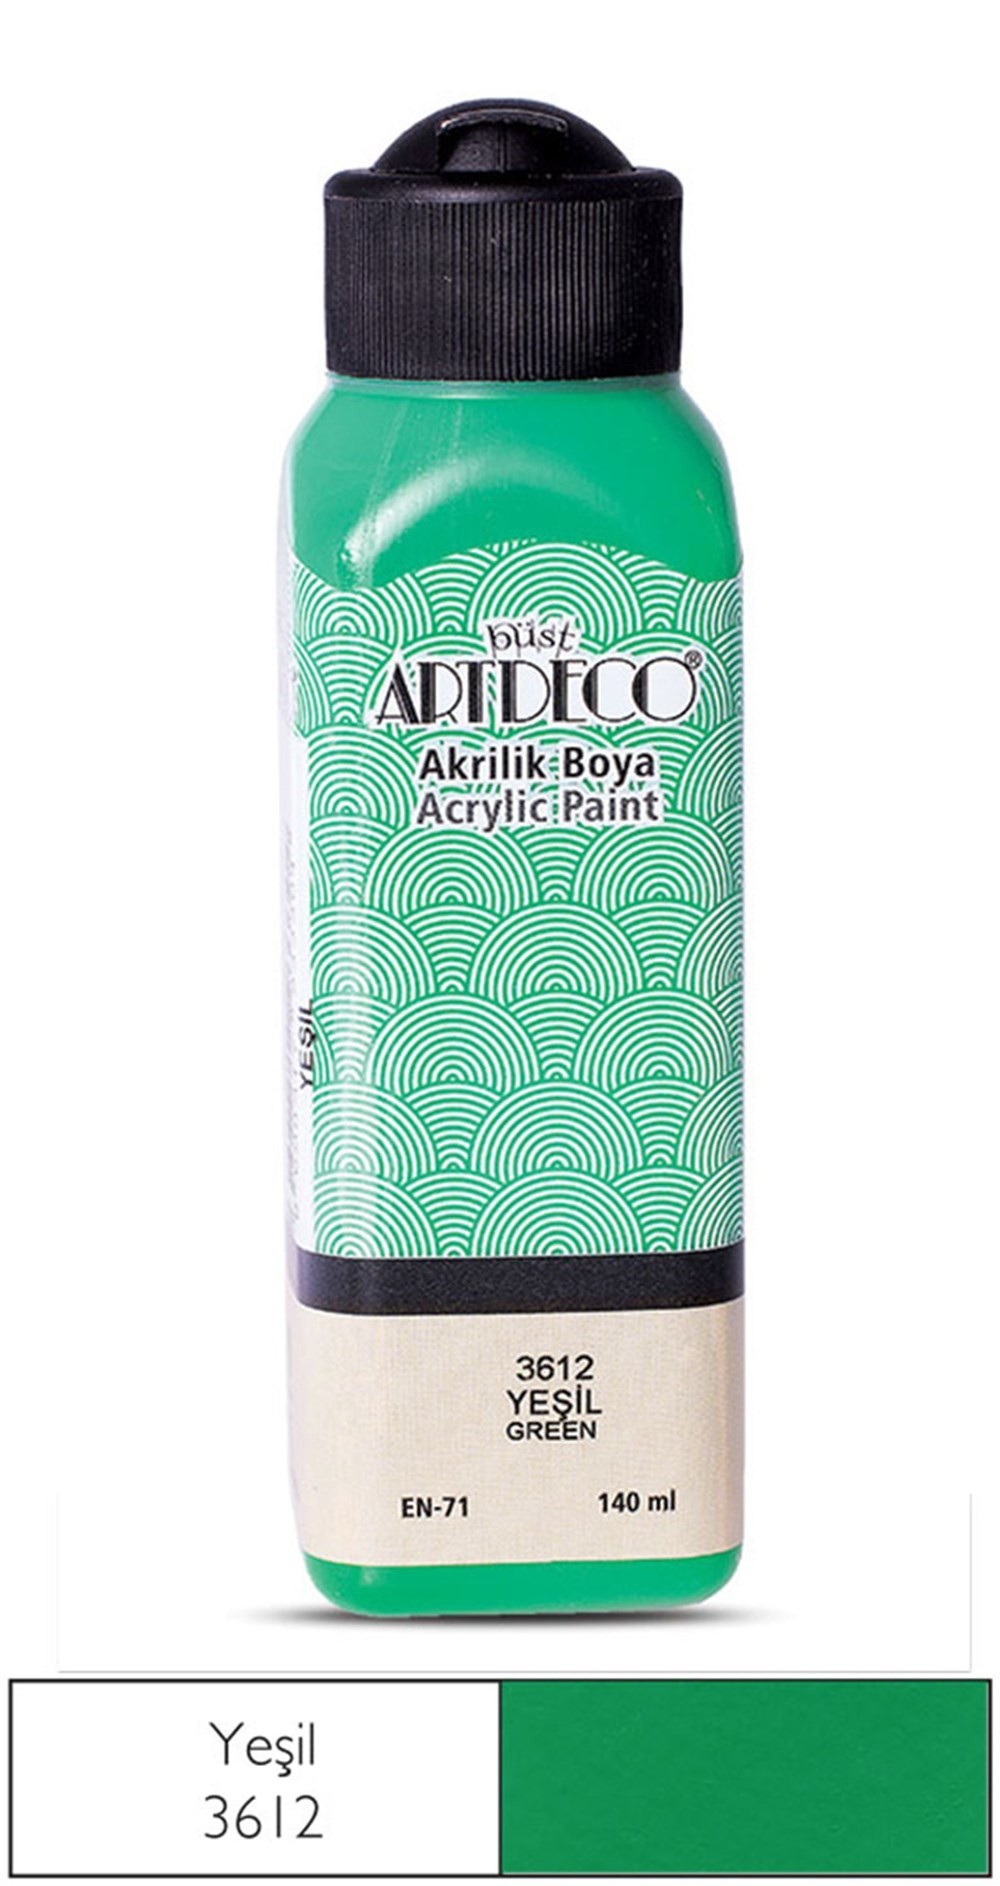 Artdeco Akrilik Boya 140 ml 3612 Yeşil